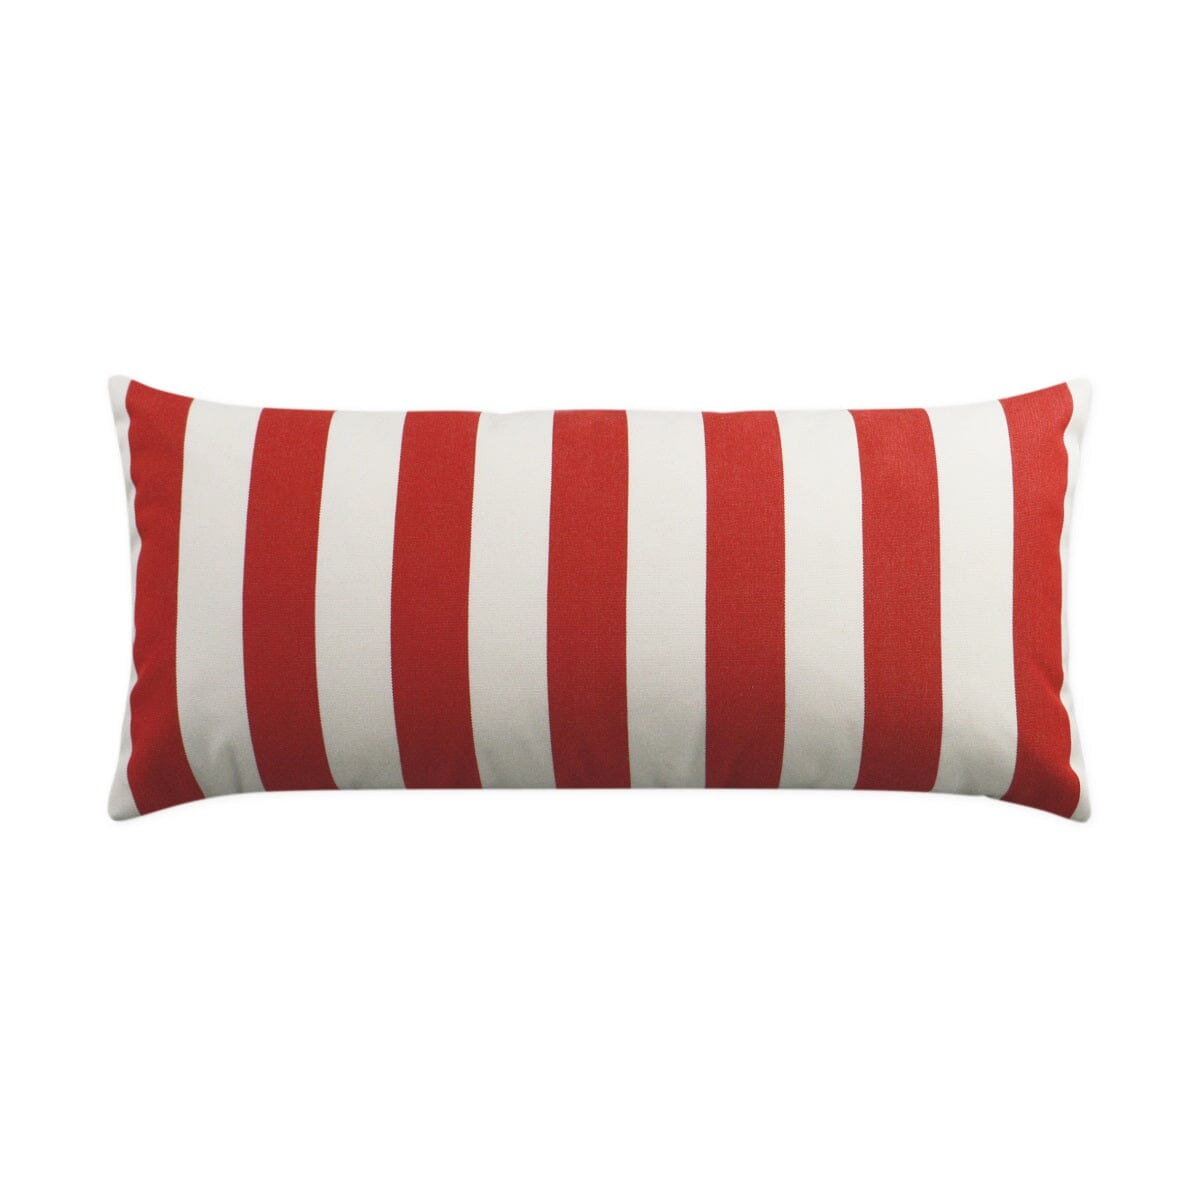 D.V. Kap 12" x 24" Outdoor Lumbar Pillow | Café Stripe Red Pillows D.V Kap Outdoor